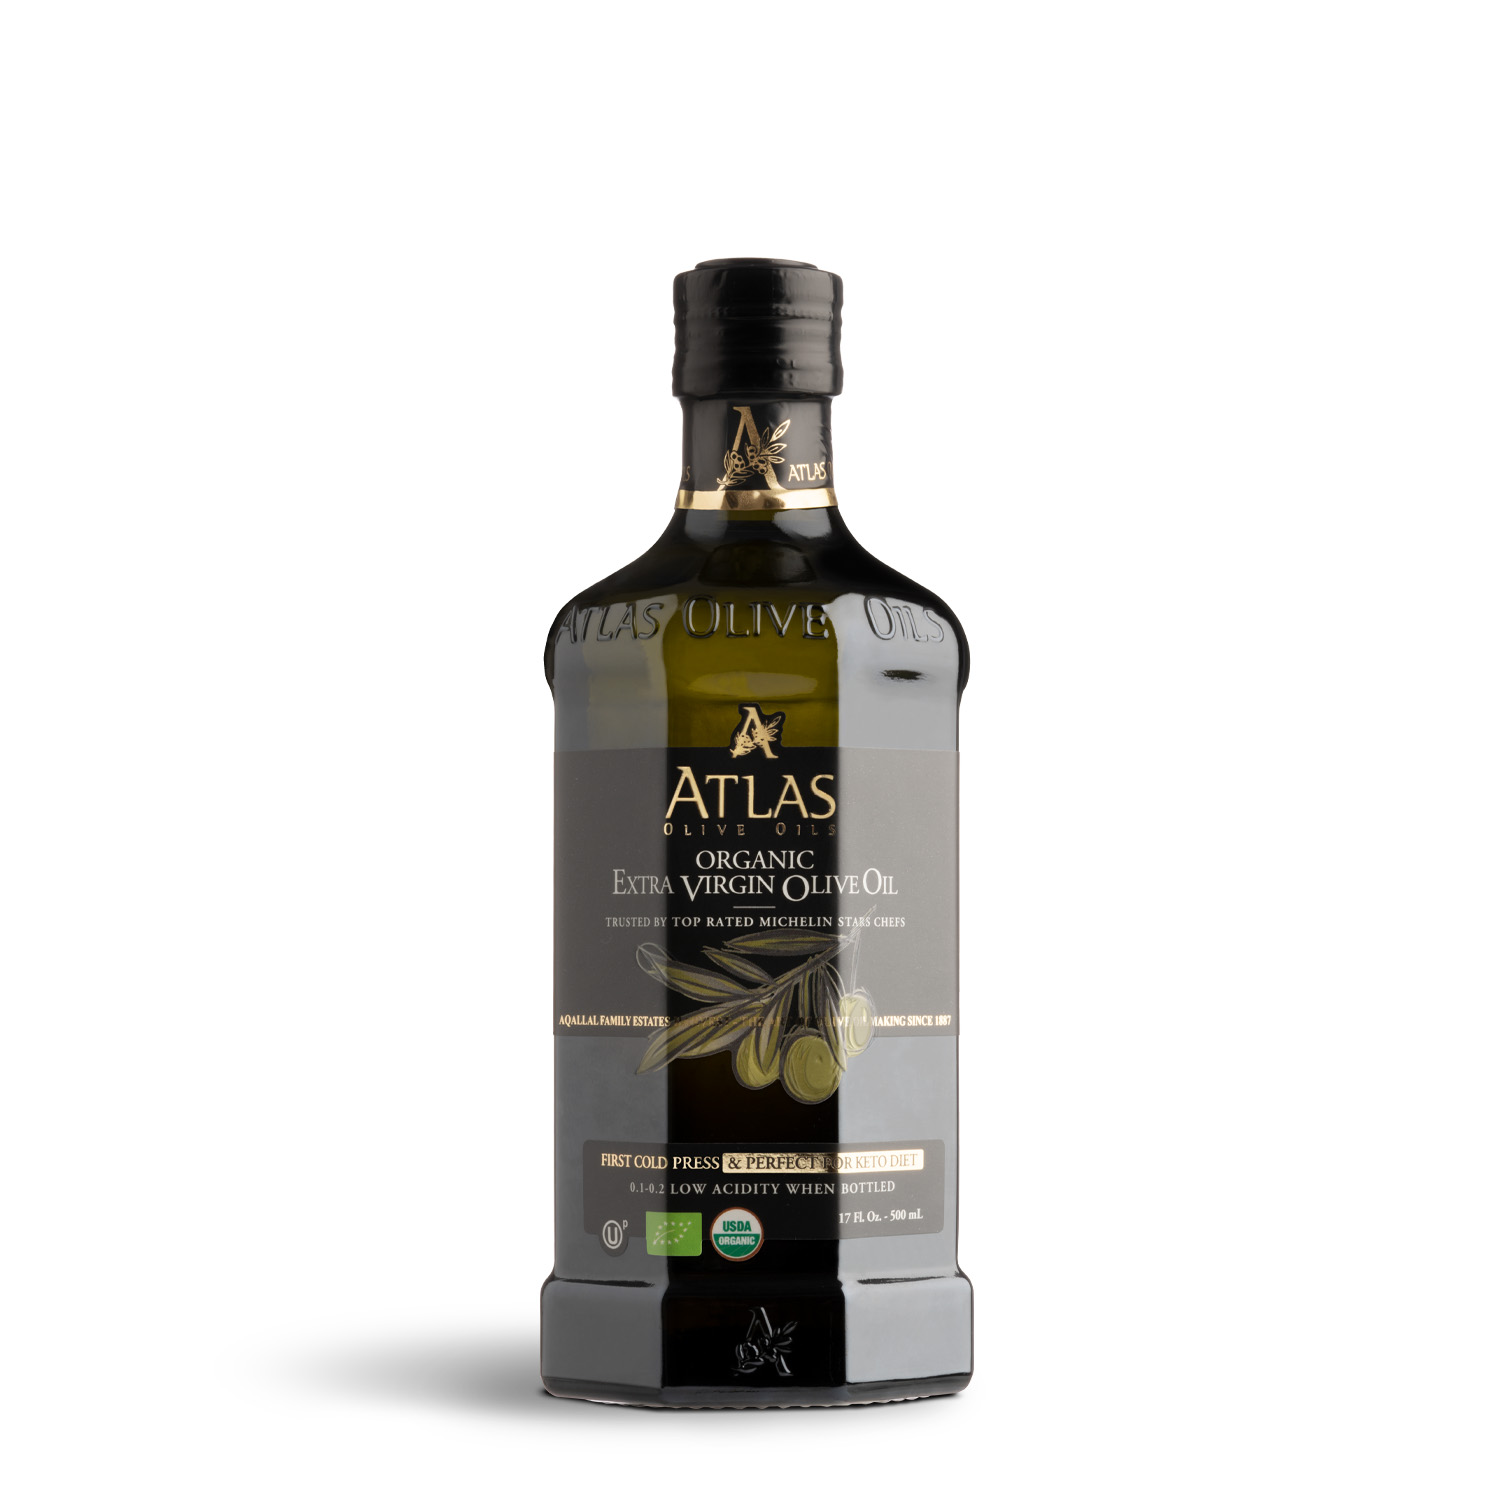 ATLAS Premium Organic Extra Virgin Olive Oil 500ml glass bottle